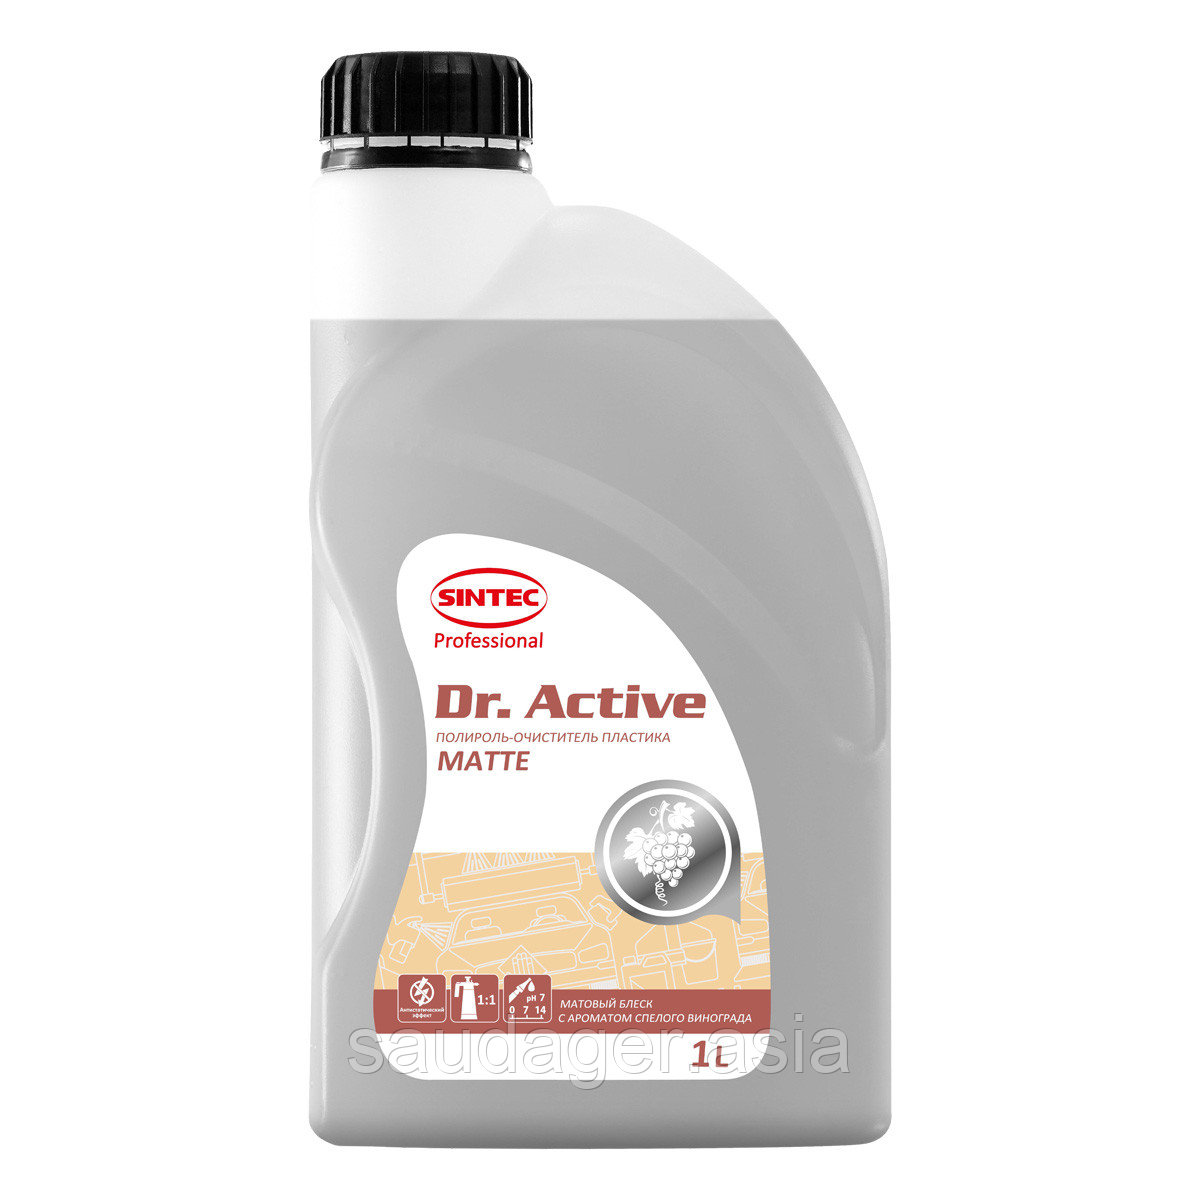 Sintec Dr. Active Полироль-очиститель пластика "Polyrole Matte" матовый блеск виноград  (1 кг)